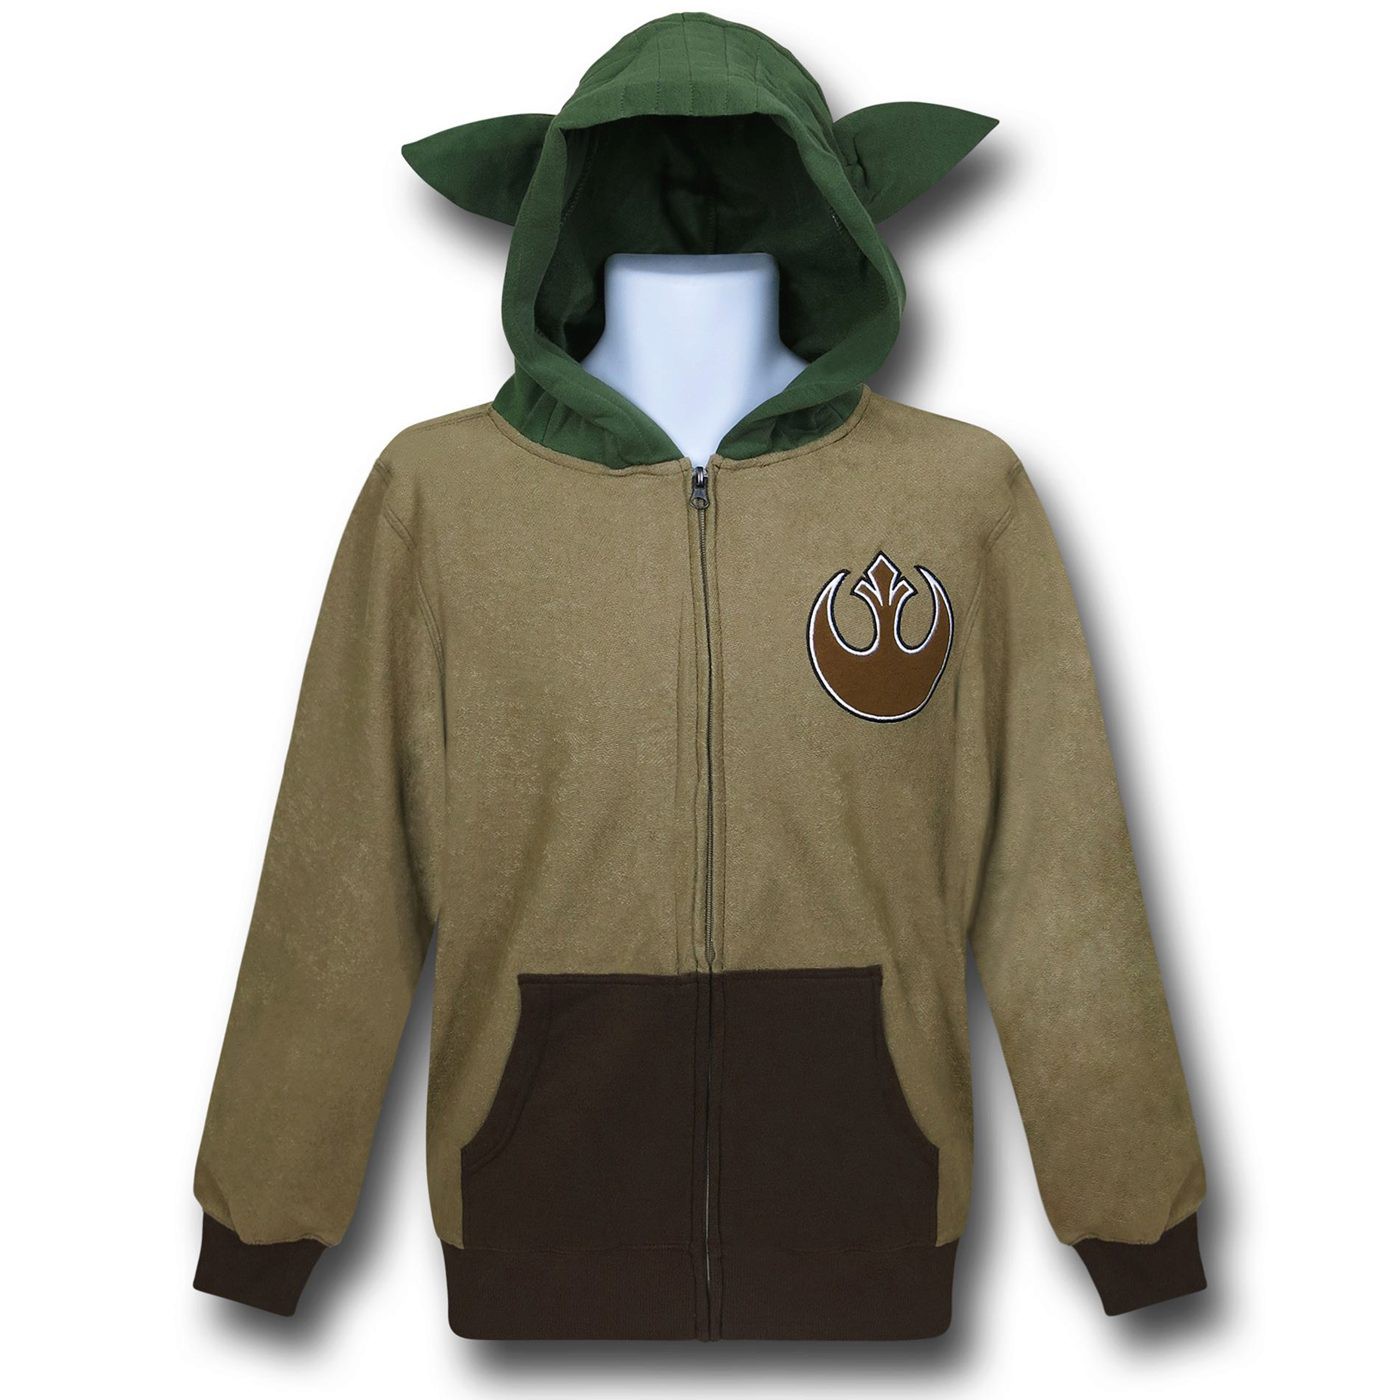 Star Wars Master Yoda Costume Hoodie